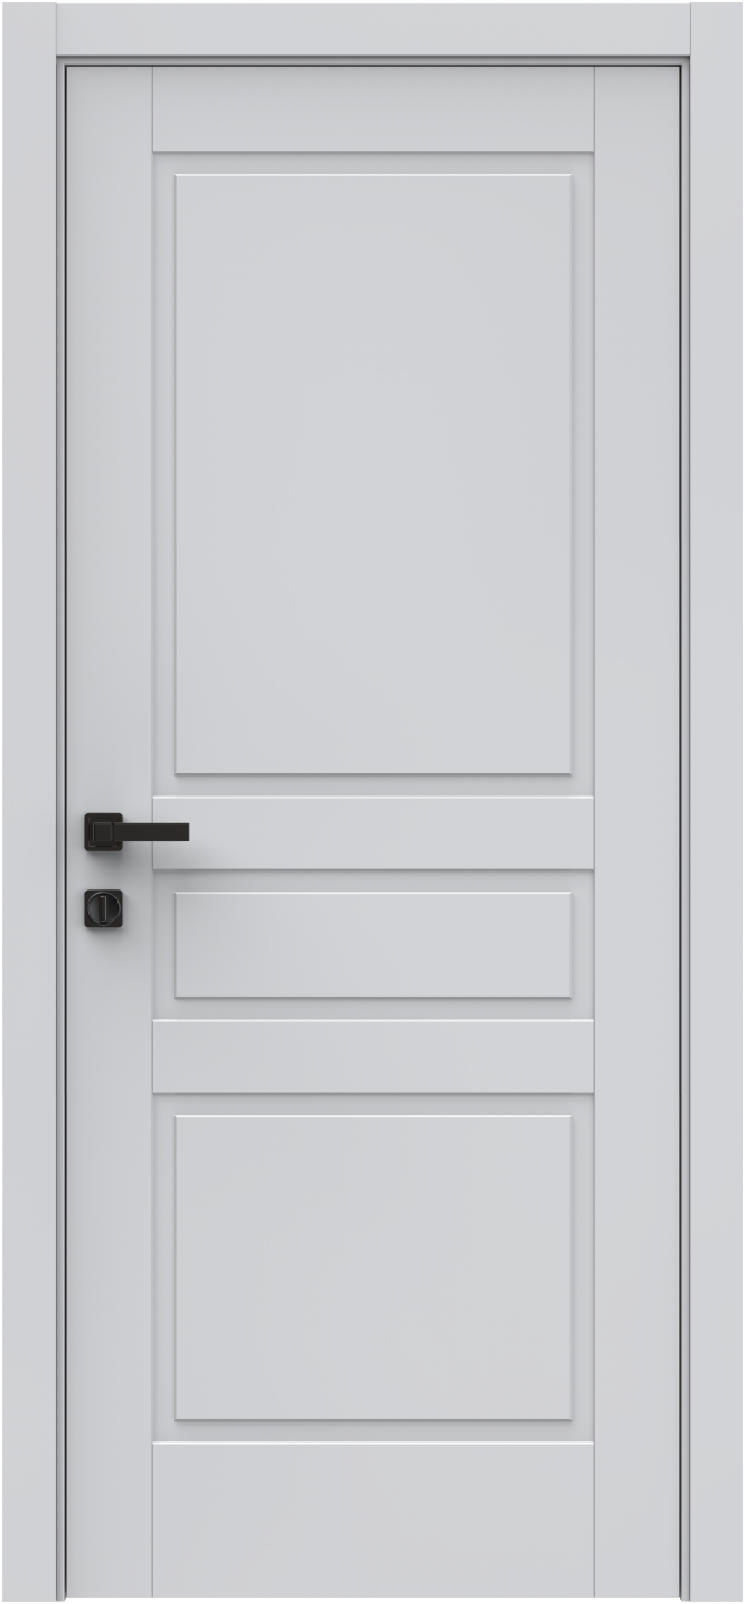 Questdoors Межкомнатная дверь QIS3, арт. 26329 - фото №1